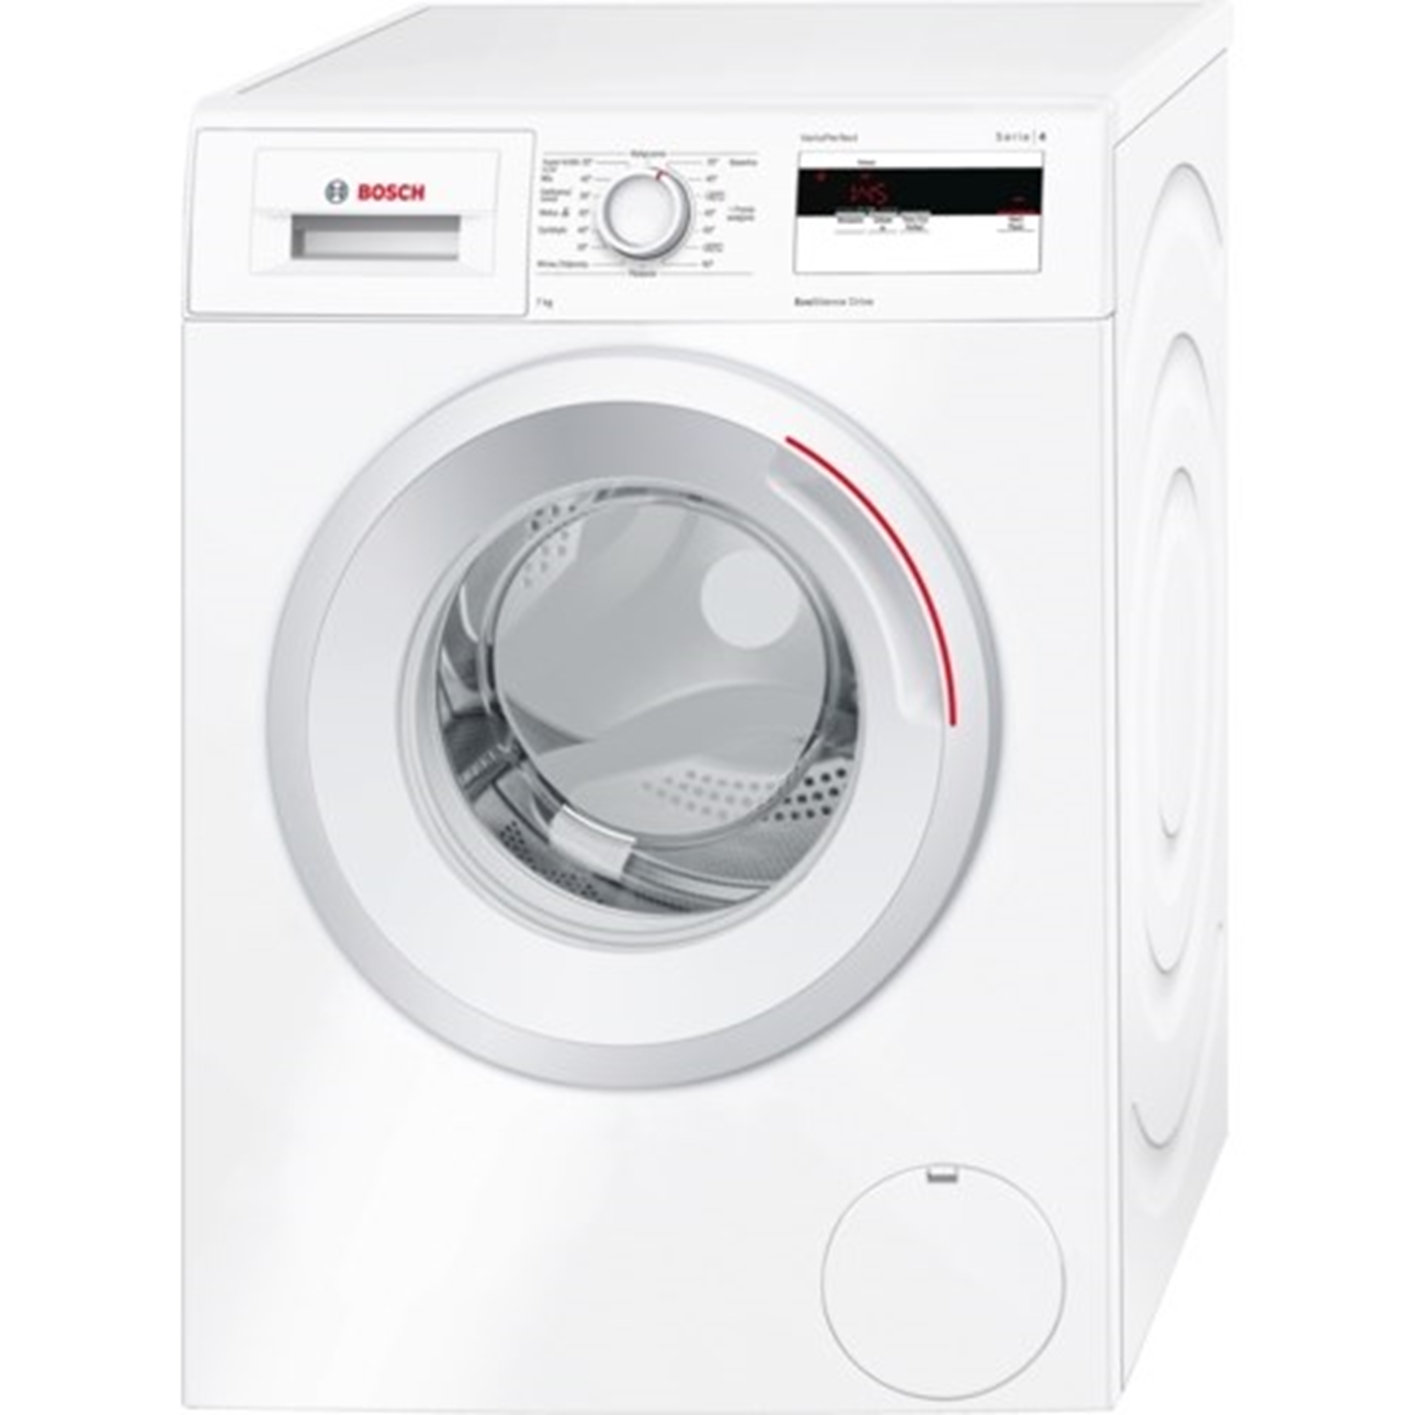 Hình ảnh của Máy giặt Bosch WAN2006BPL